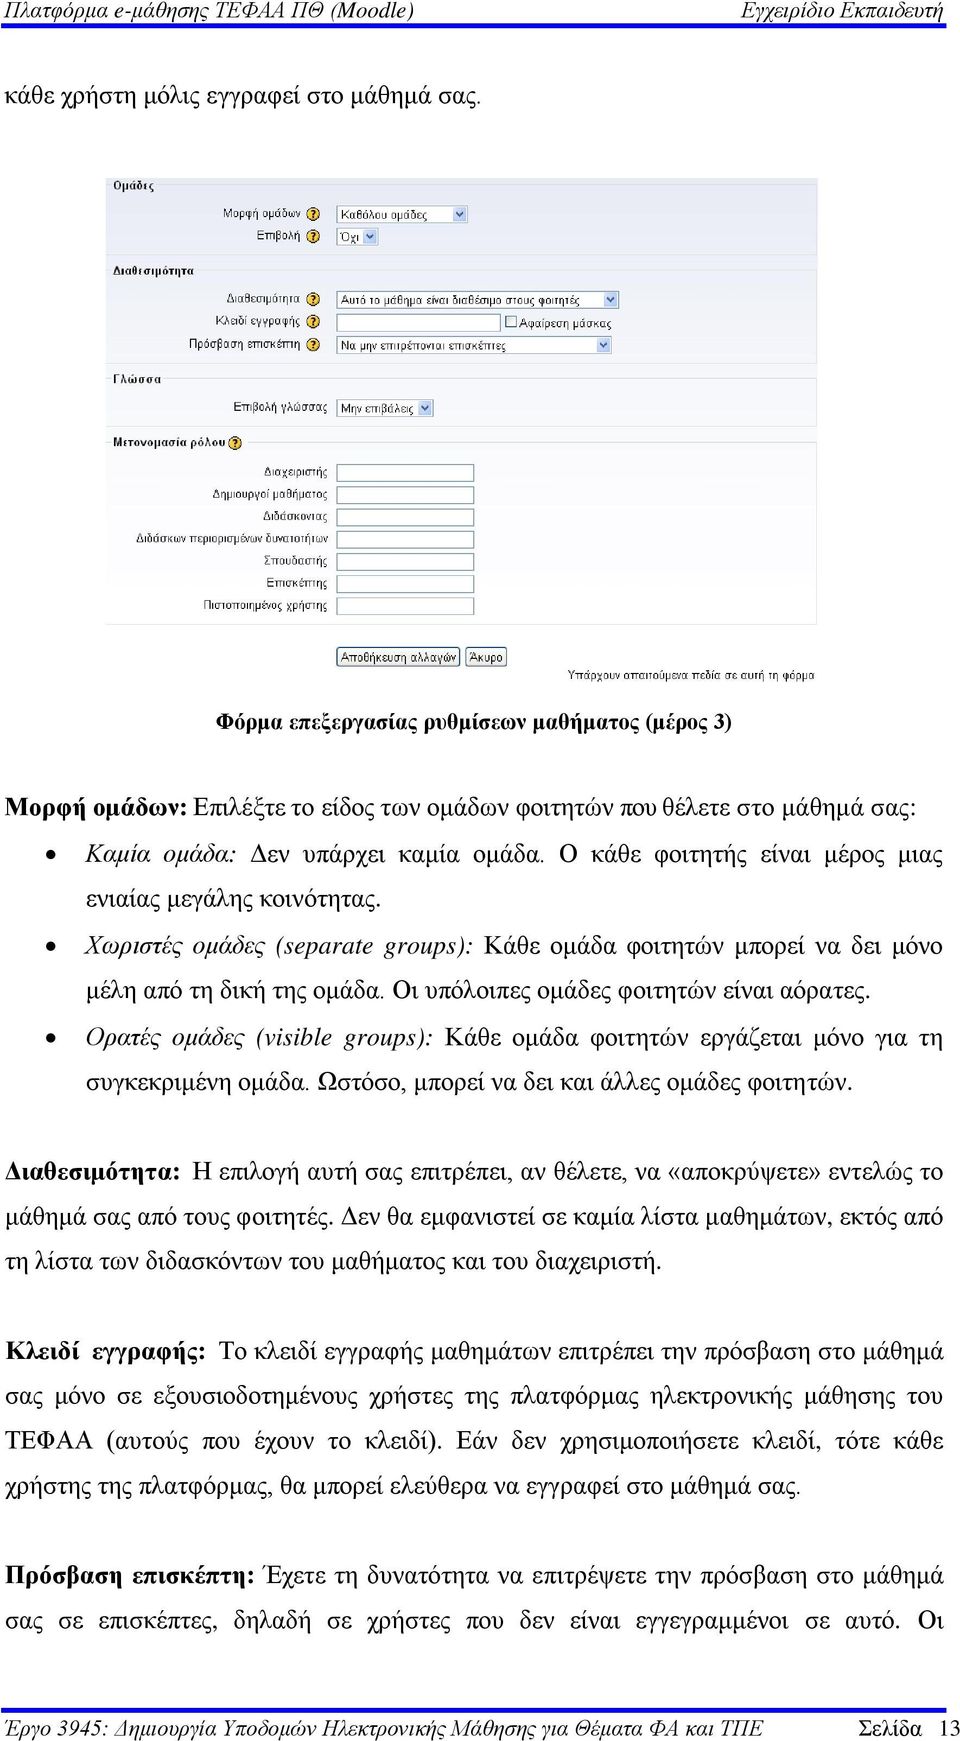 Πλατφόρμα e-μάθησης βασισμένη στο Moodle - PDF Free Download